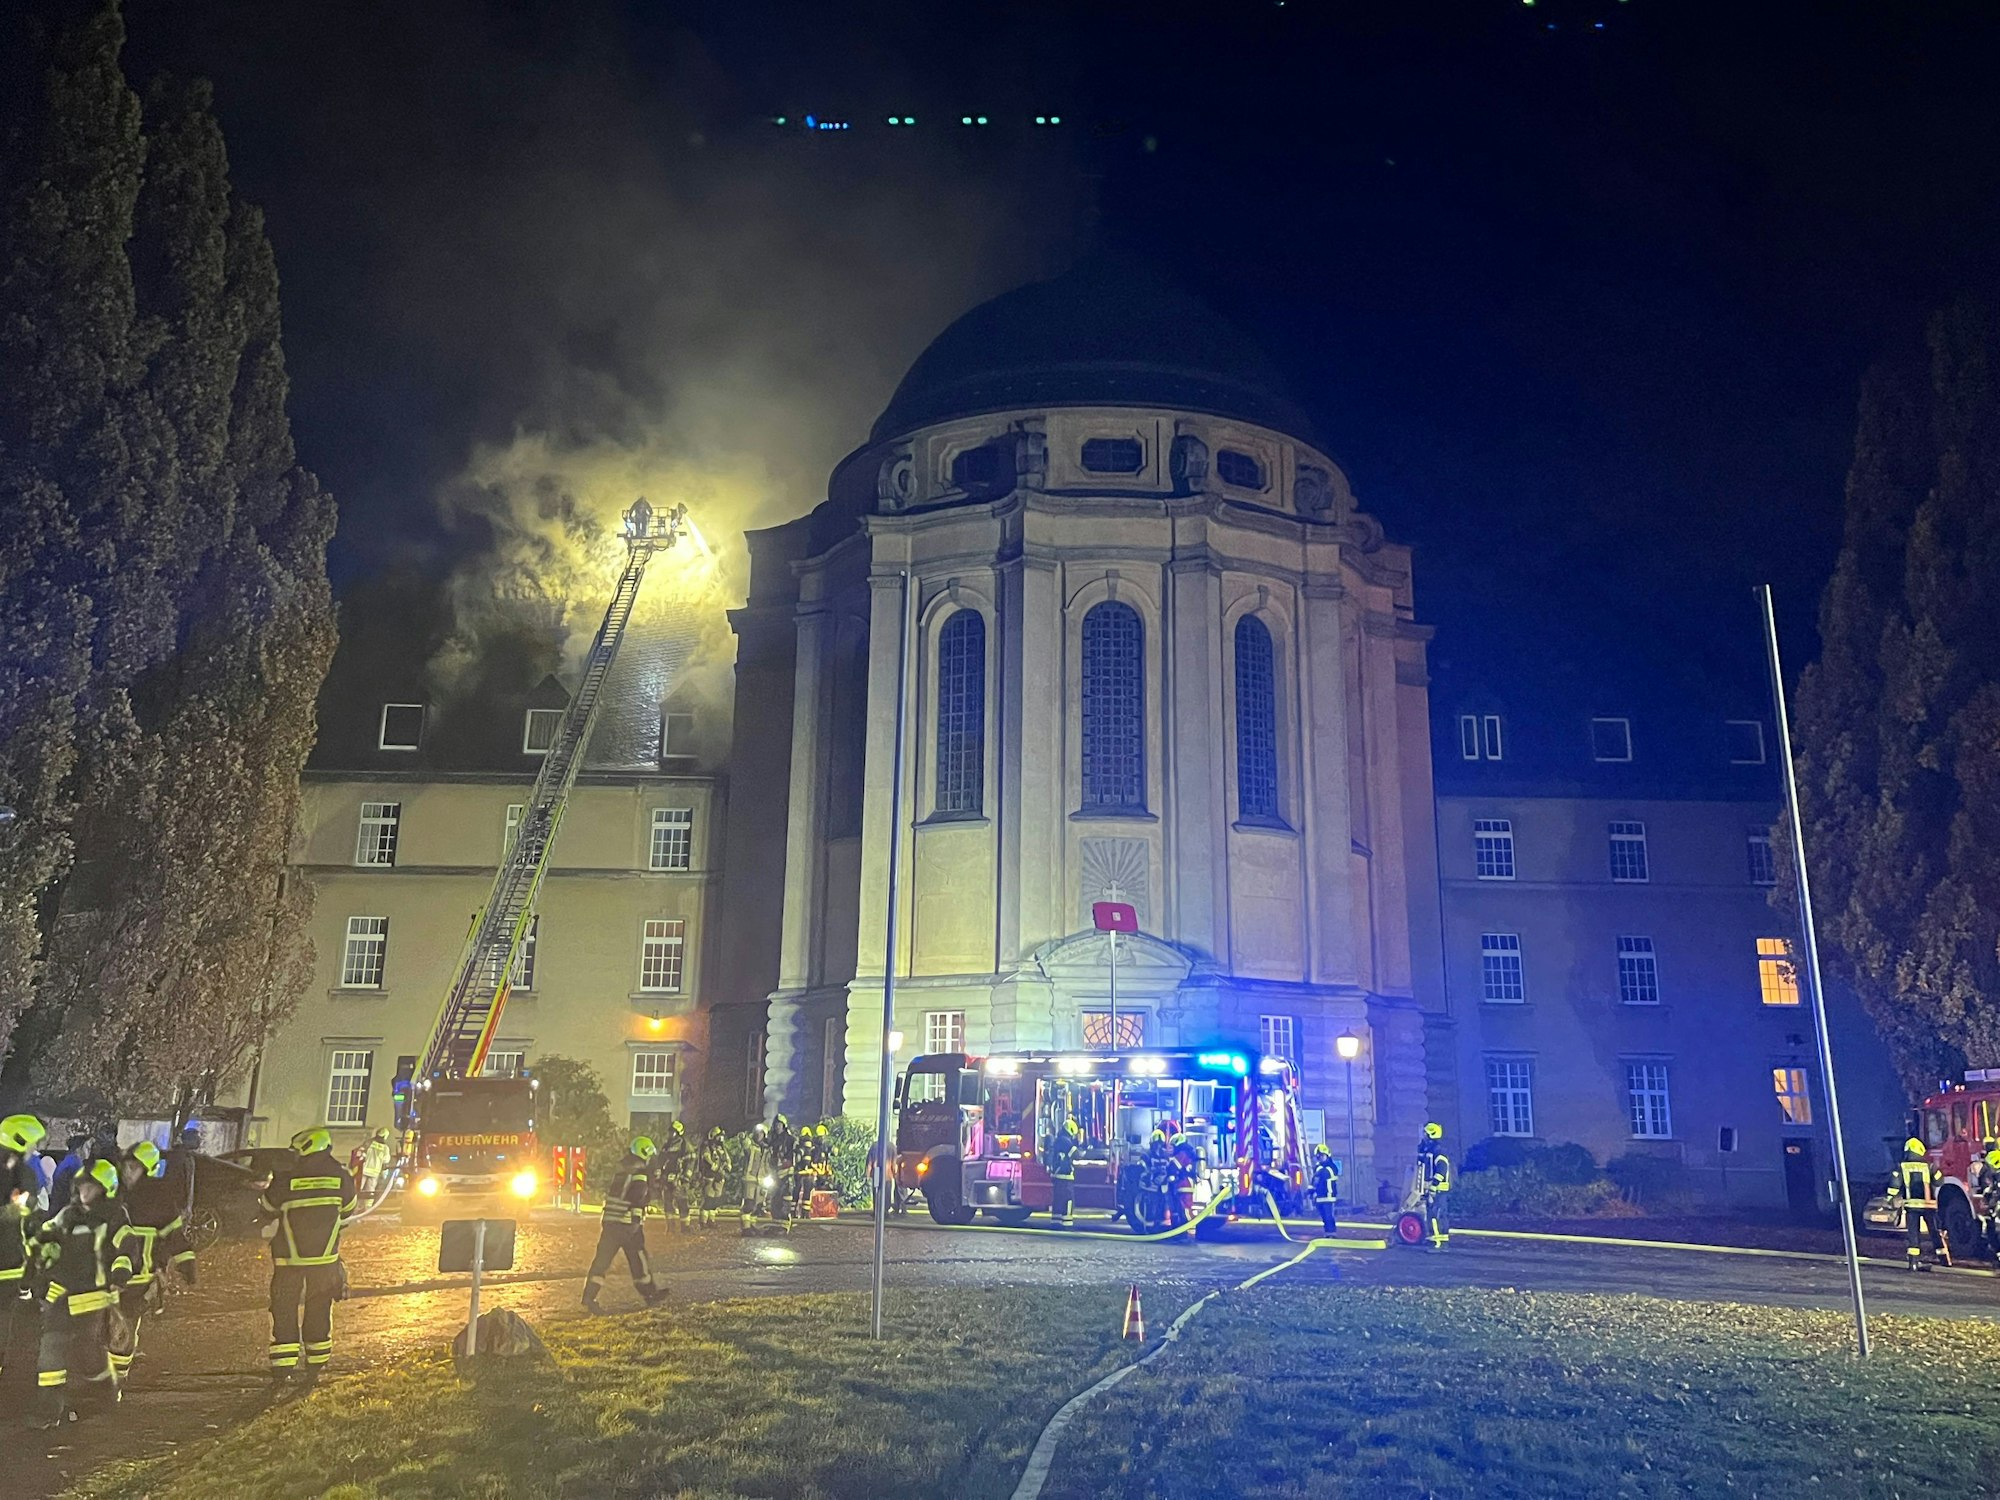 Heller Feuerschein ist über dem Dach eines Nebengebäudes zu sehen, eine Drehleiter wurde ausgefahren, Dutzende Feuerwehrleute sind im Einsatz. Ein Löschfahrzeug mit Blaulicht steht vor der runden Klosterkirche.